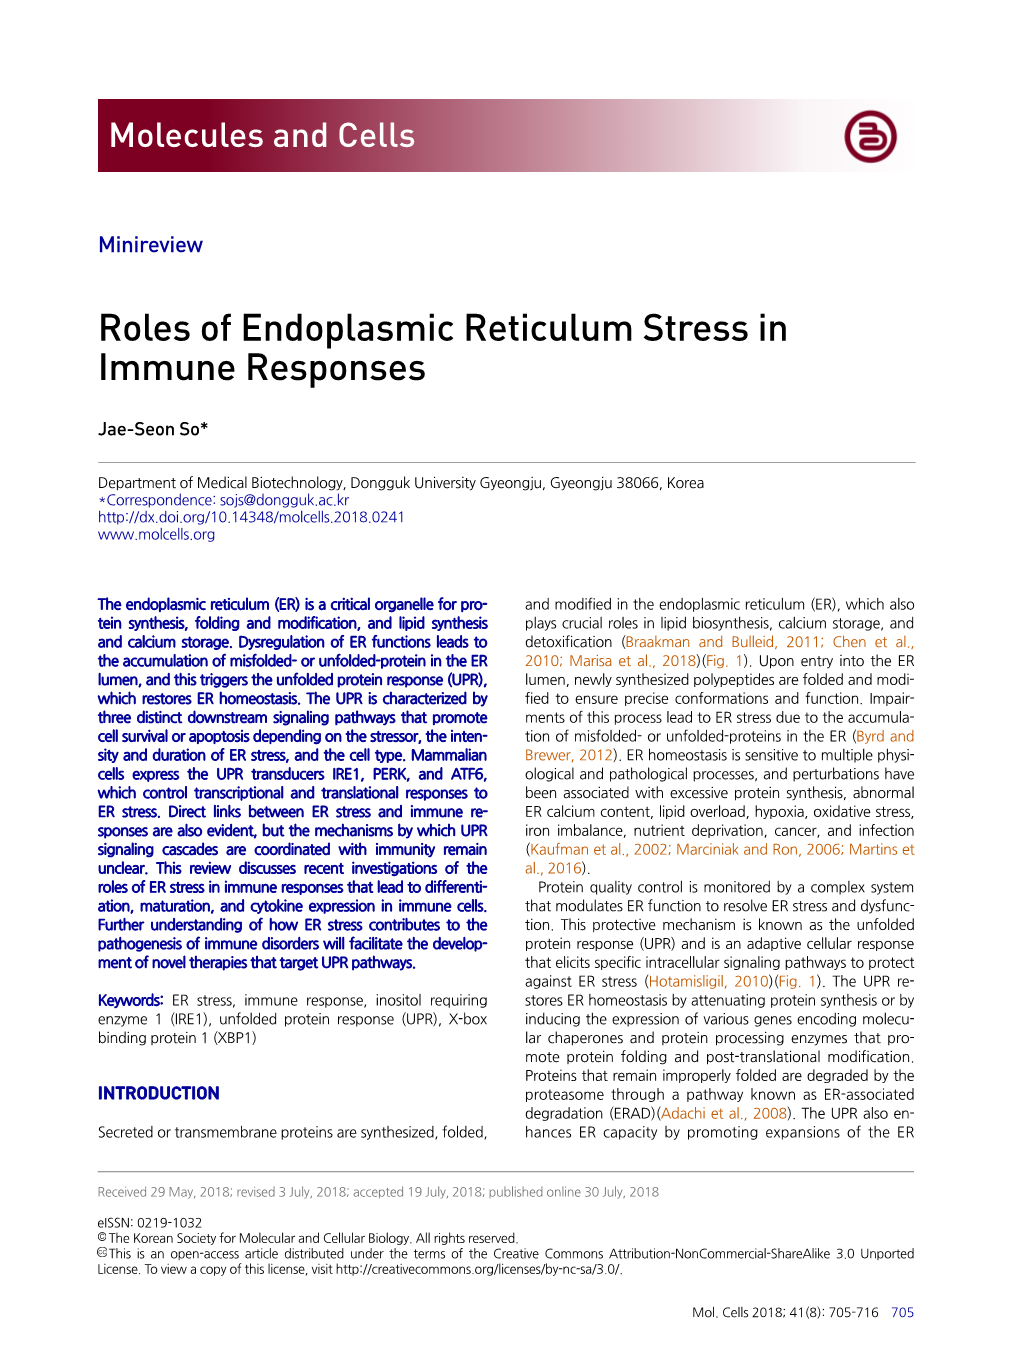 Roles of Endoplasmic Reticulum Stress in Immune Responses